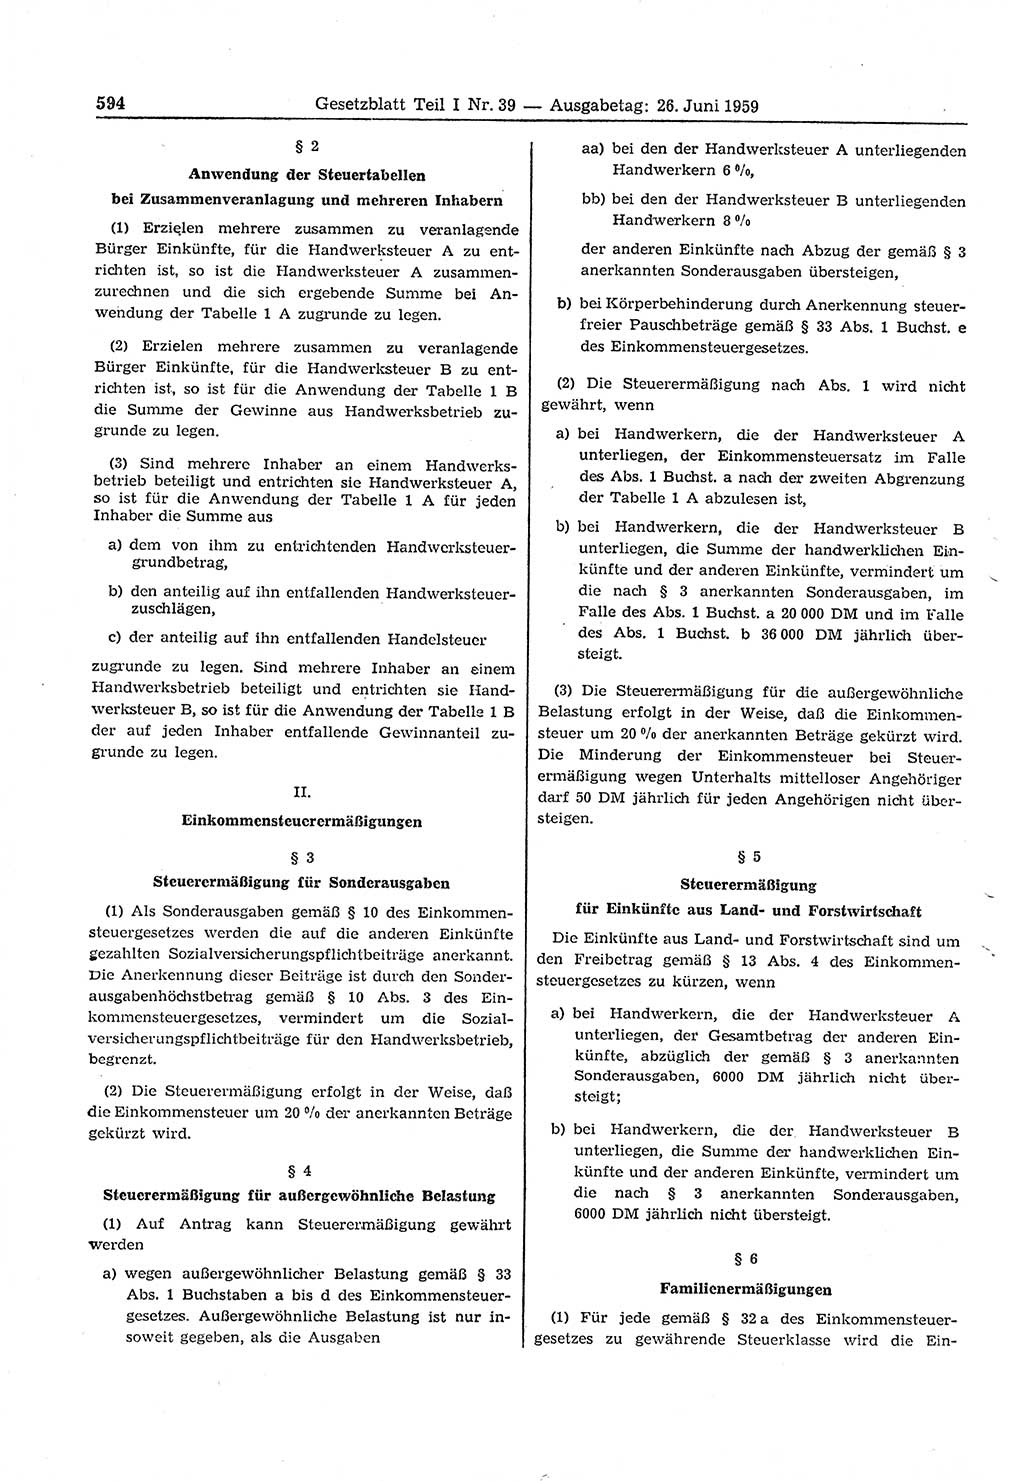 Gesetzblatt (GBl.) der Deutschen Demokratischen Republik (DDR) Teil Ⅰ 1959, Seite 594 (GBl. DDR Ⅰ 1959, S. 594)